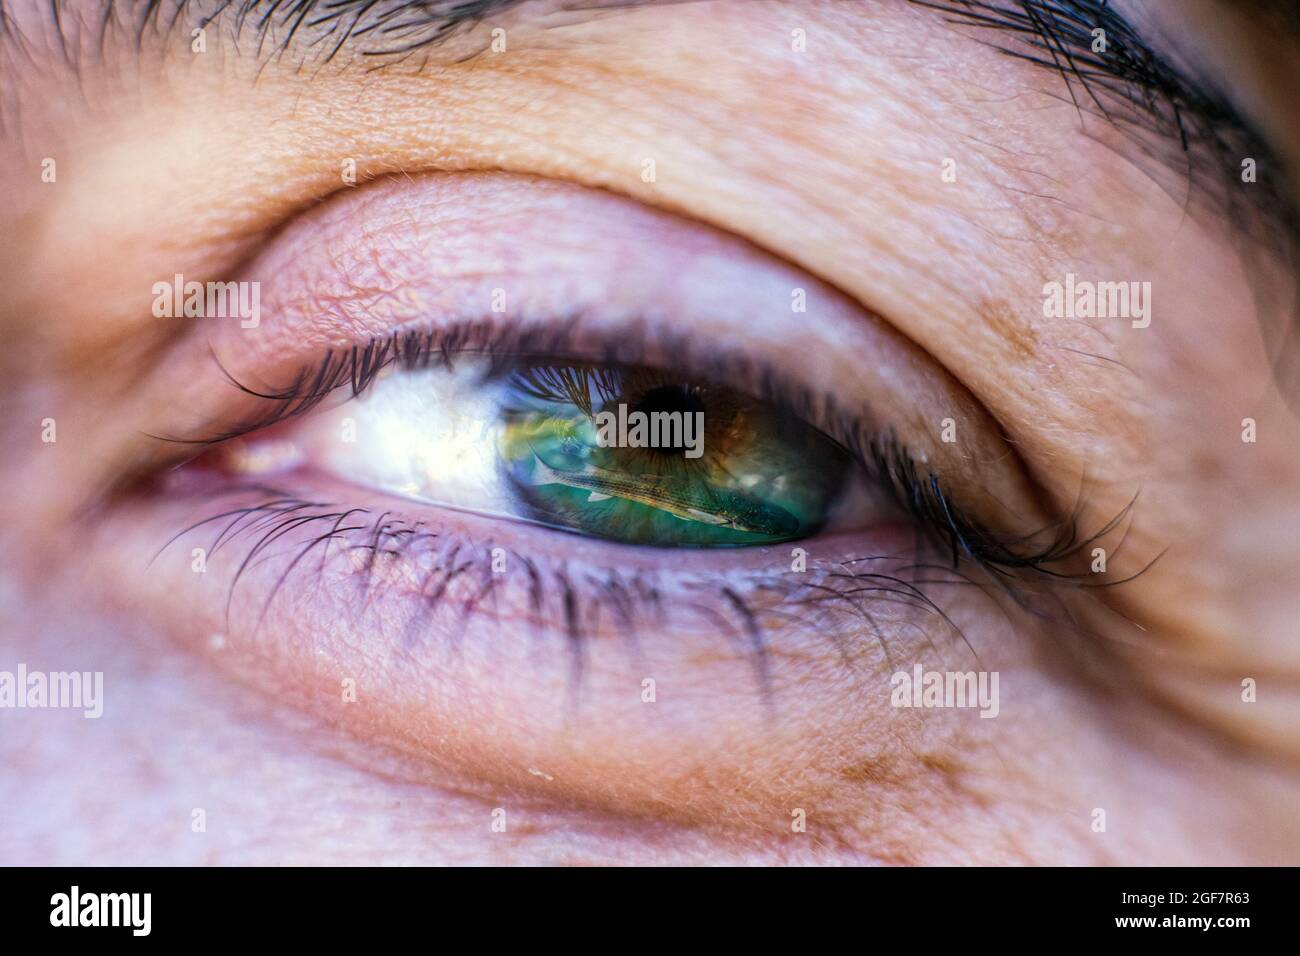 Naturaleza en el ojo: Un pez salmonete en el ojo de una mujer con heterocromia central. Imagen de doble exposición. Foto de stock